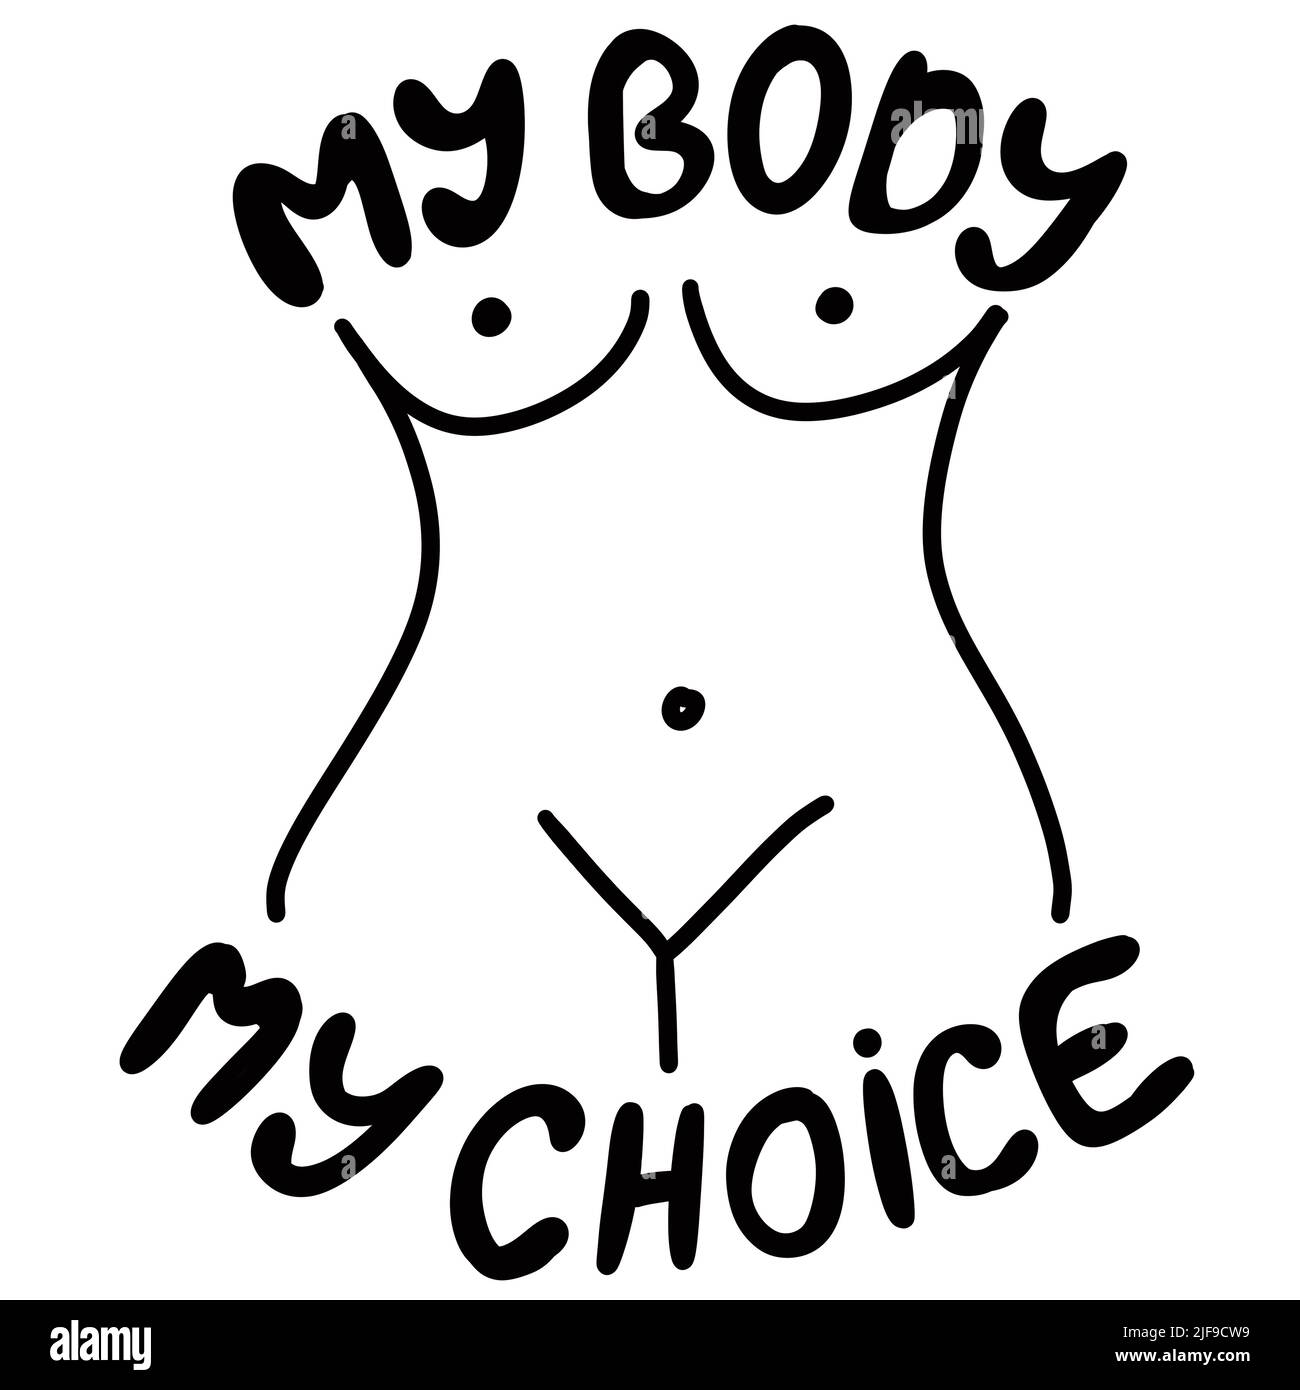 Il mio corpo la mia scelta illustrazione disegnata a mano con il corpo della donna. Concetto di attivismo del femminismo, diritti riproduttivi di aborto, disegno di riga contro vanga Foto Stock